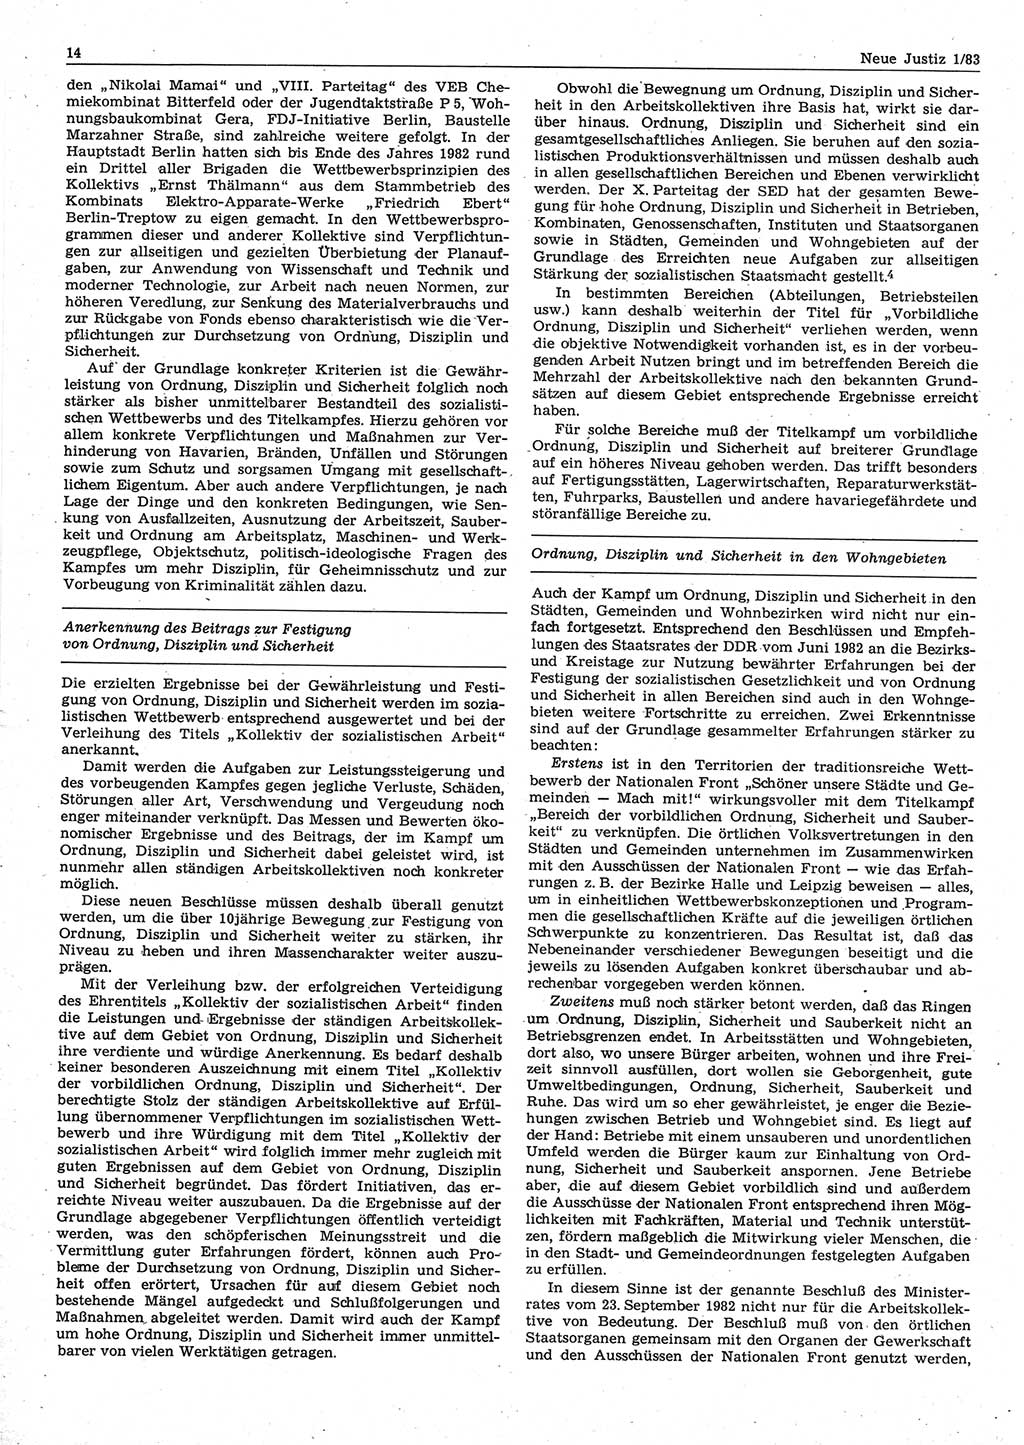 Neue Justiz (NJ), Zeitschrift für sozialistisches Recht und Gesetzlichkeit [Deutsche Demokratische Republik (DDR)], 37. Jahrgang 1983, Seite 14 (NJ DDR 1983, S. 14)